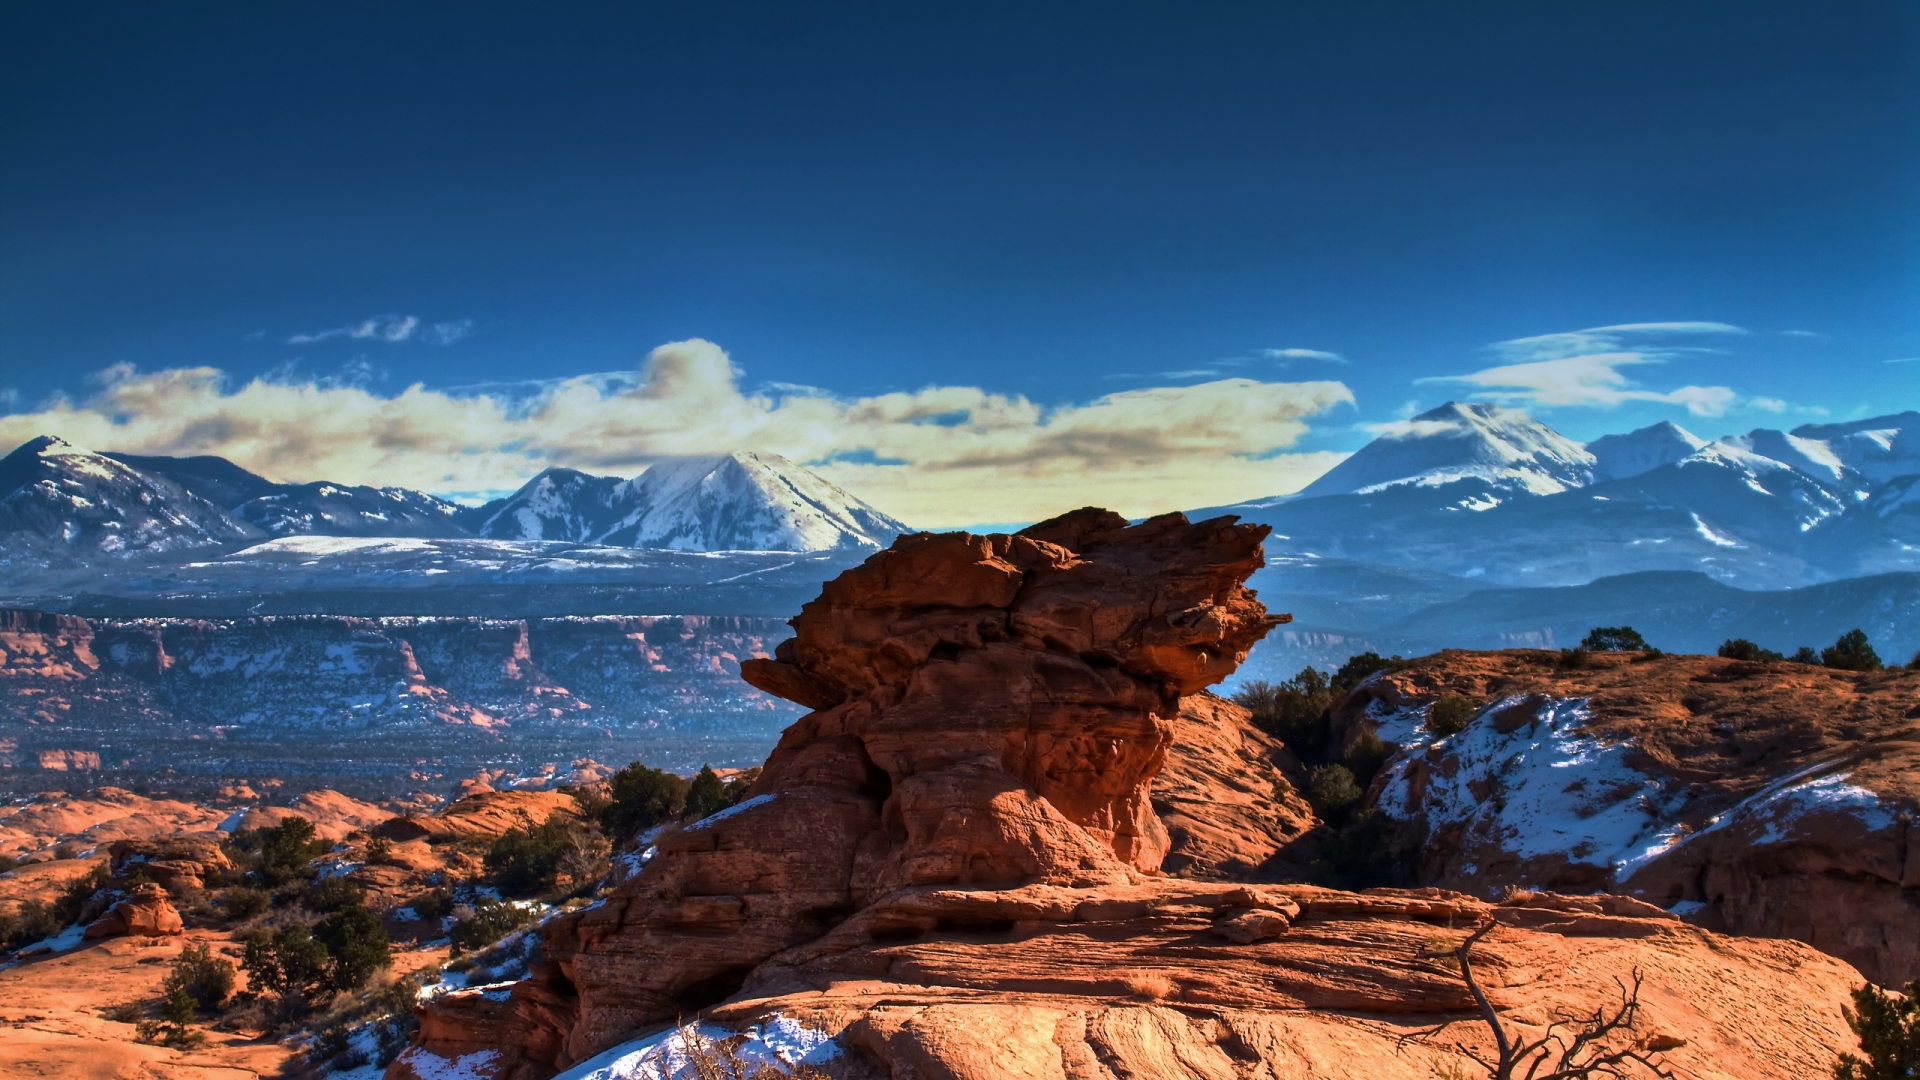 Moab Utah Mountains for 1920 x 1080 HDTV 1080p resolution